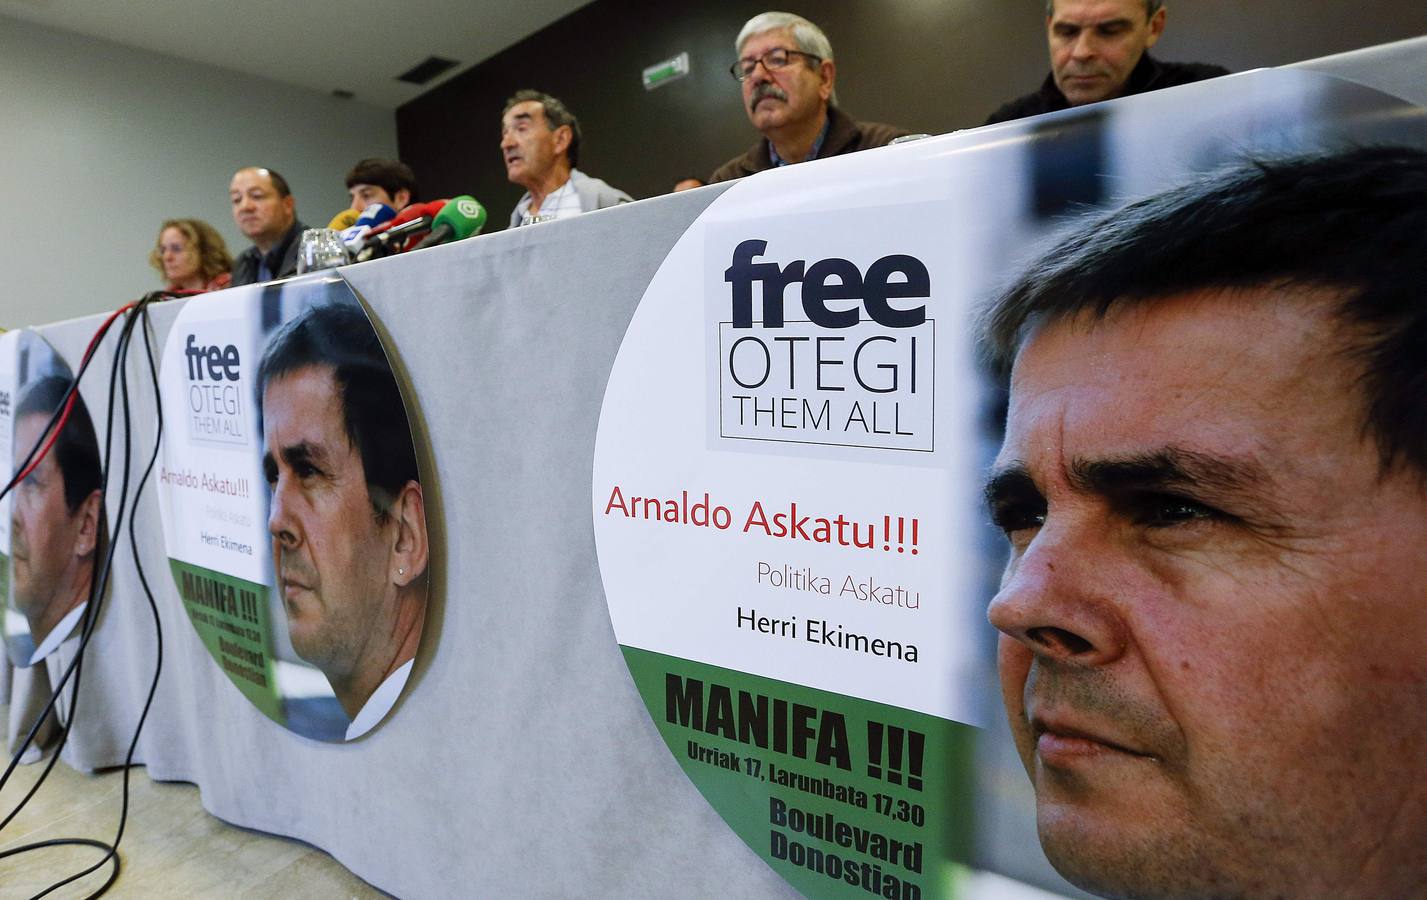 Un momento de la rueda de prensa en la que se anunció la manifestación para pedir la libertad de Arnaldo Otegi.